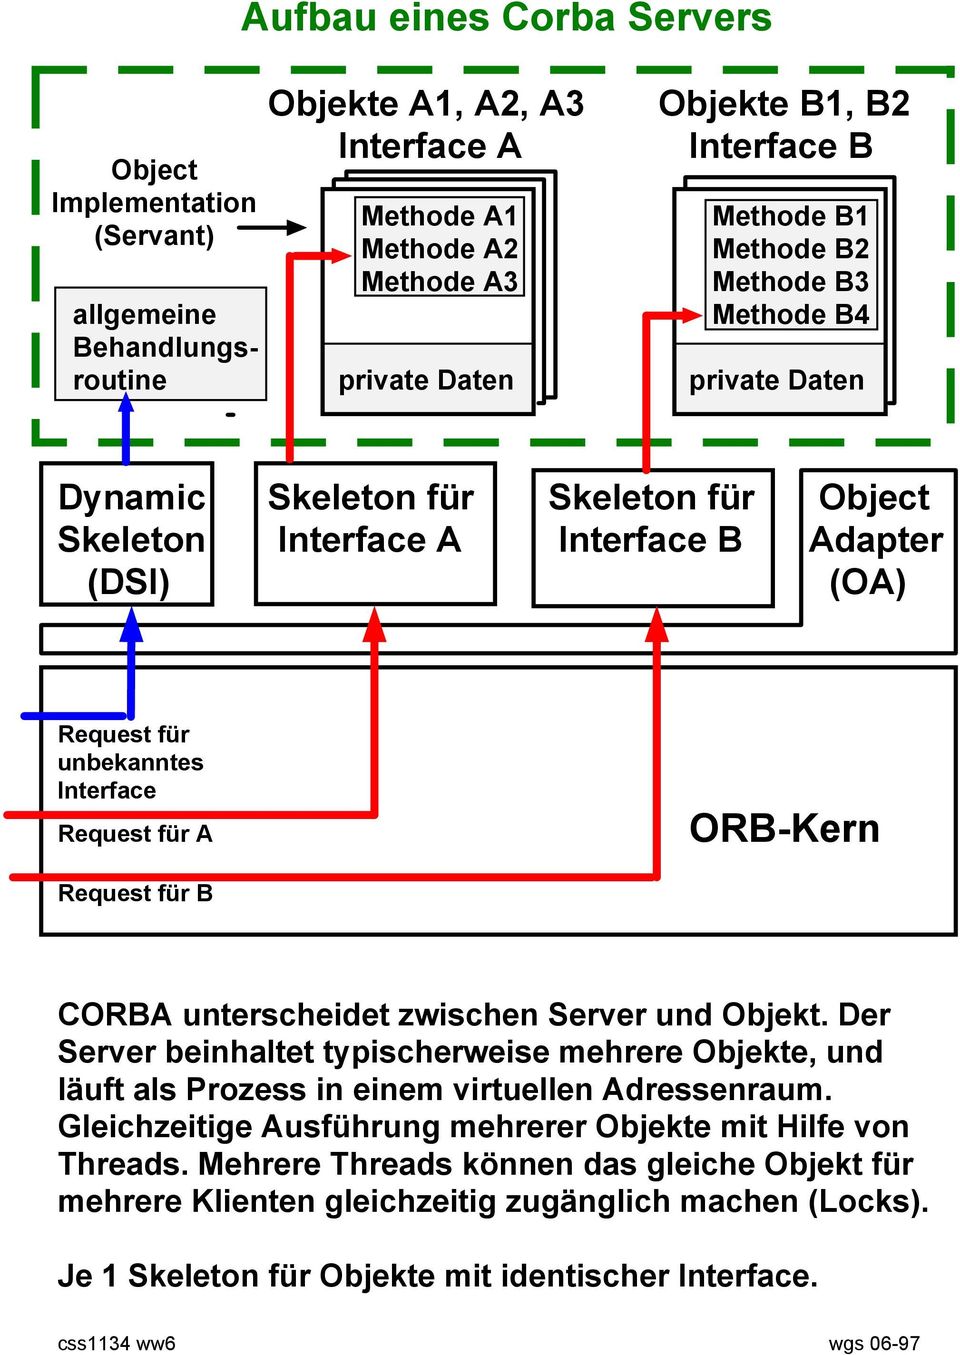 ORB-Kern Request für B CORBA unterscheidet zwischen Server und Objekt. Der Server beinhaltet typischerweise mehrere Objekte, und läuft als Prozess in einem virtuellen Adressenraum.